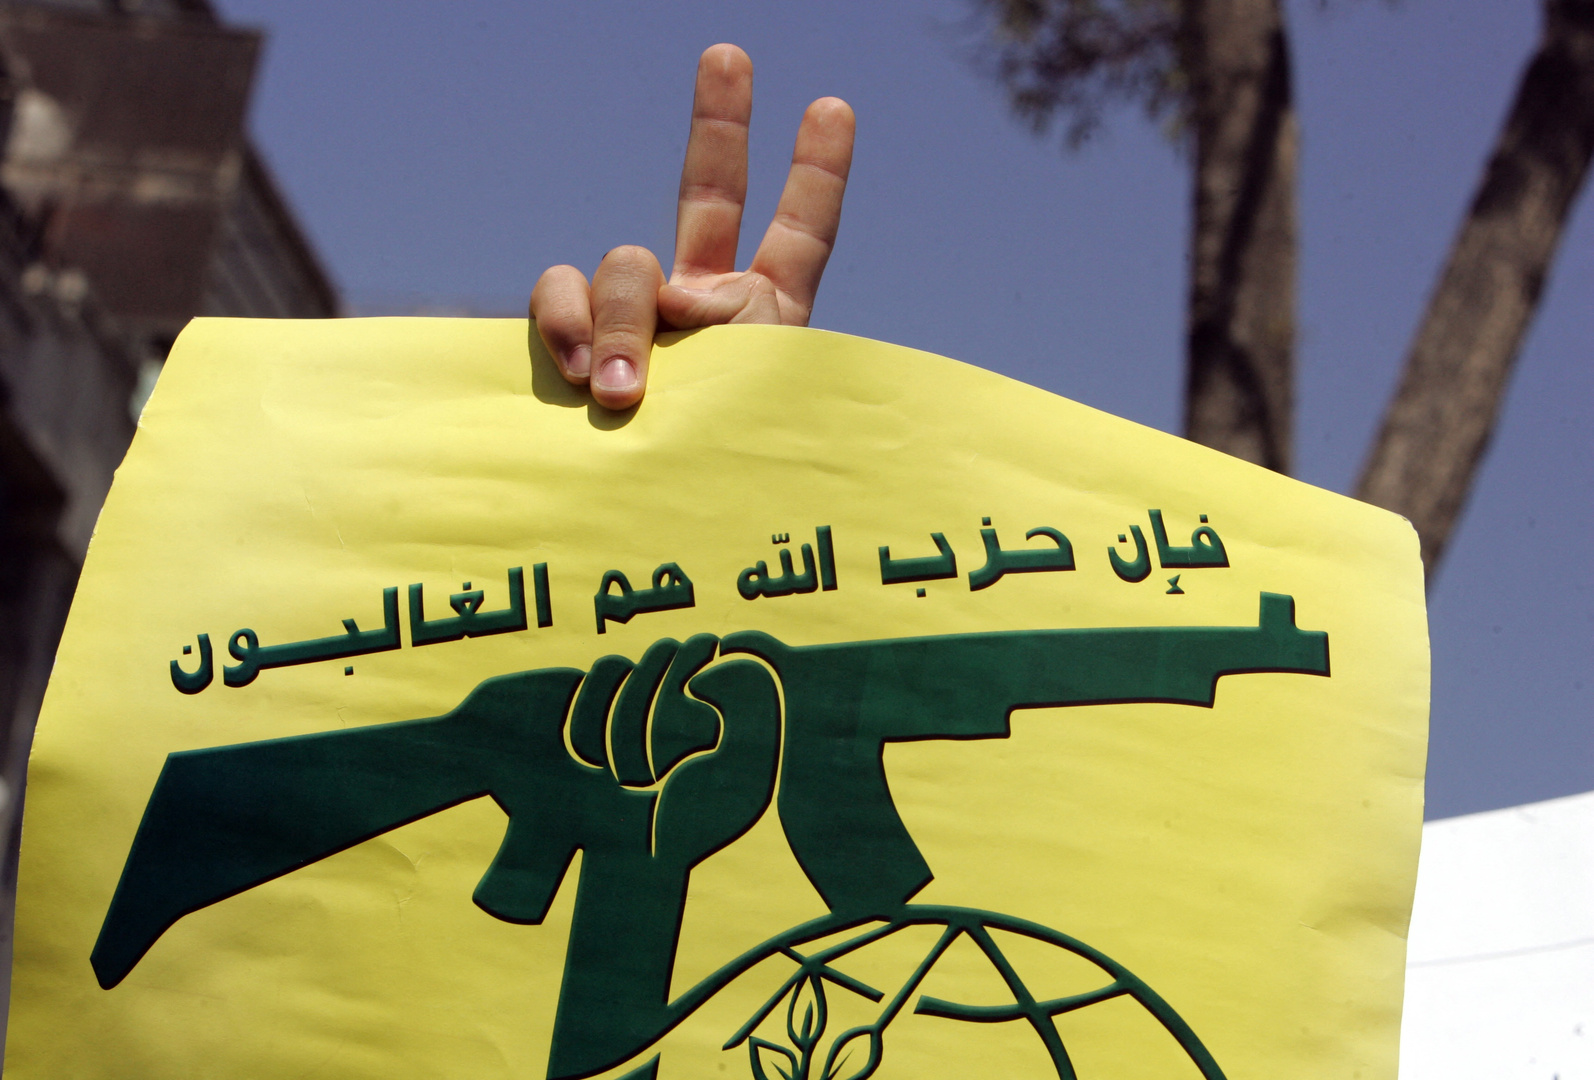 حزب الله: نفذنا هجوما جويا بمسيرات انقضاضية على قاعدة ‌‏بيت هلل العسكرية ومنصات للقبة الحديدية